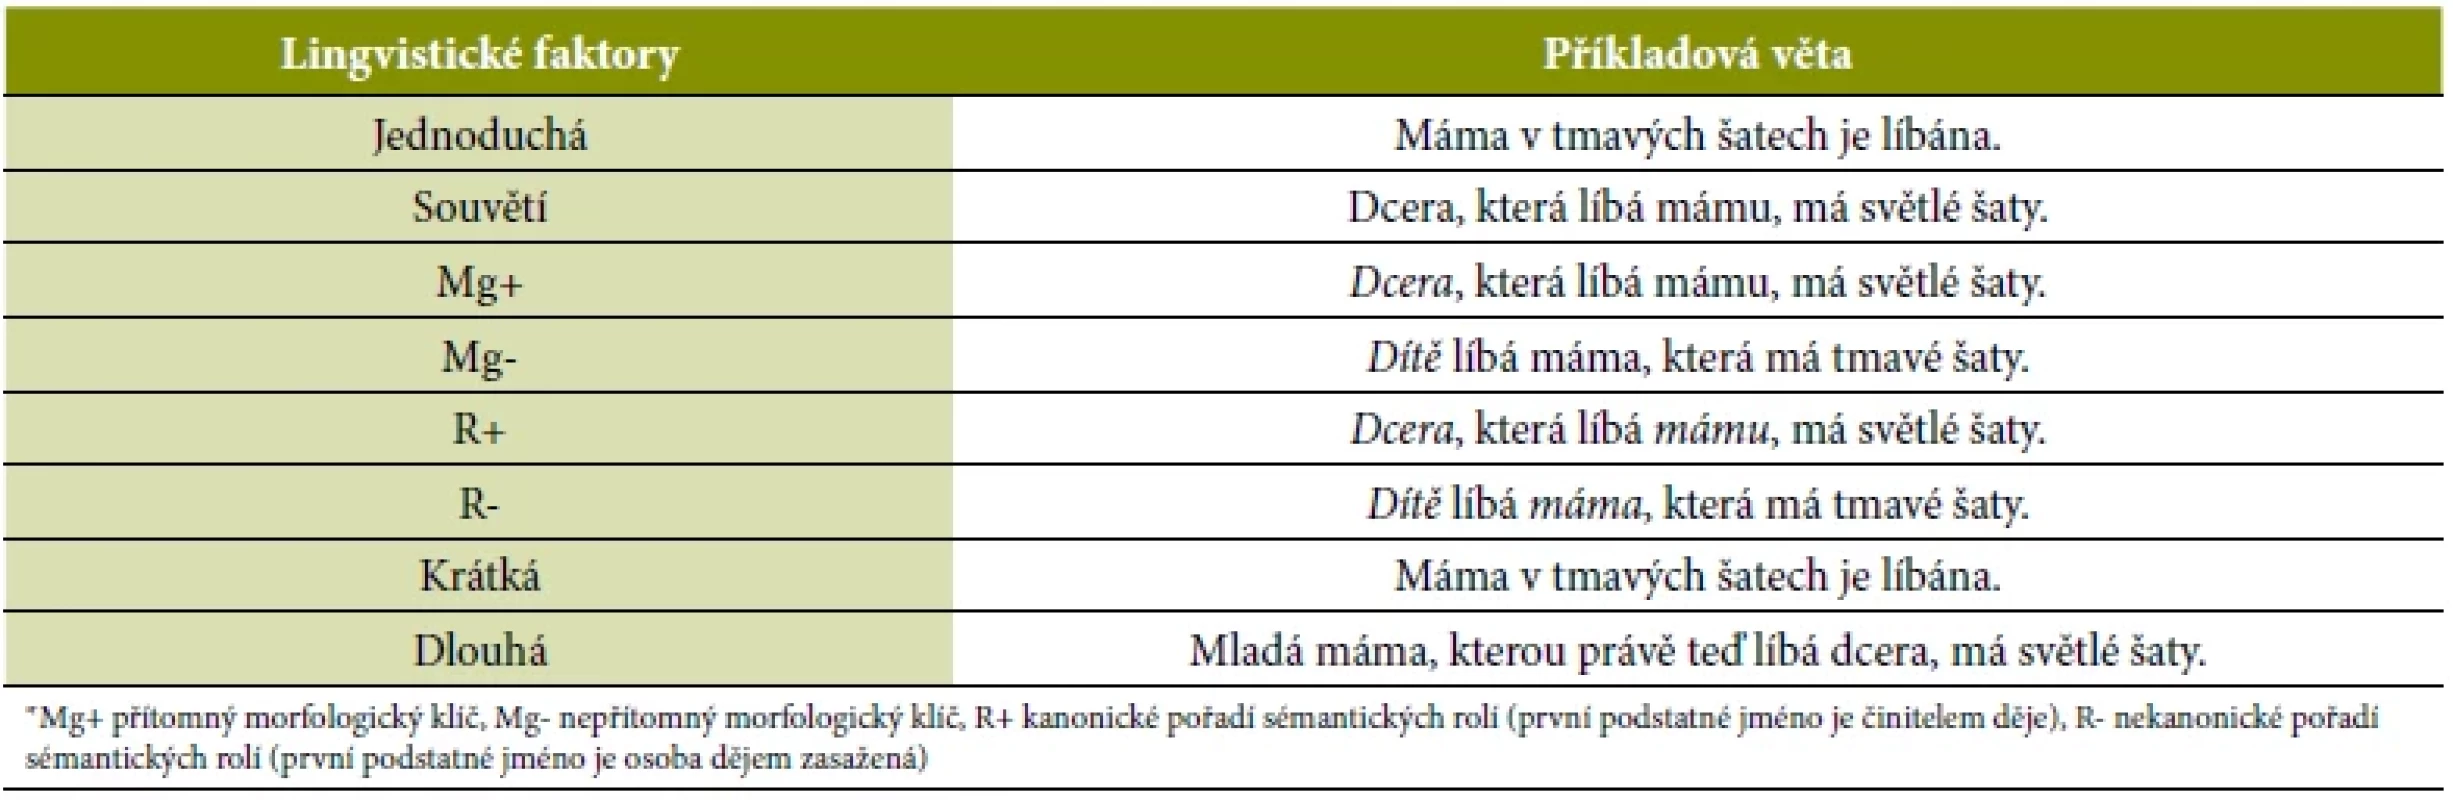 Lingvistické faktory v TPVcz (převzato a upraveno z: Václavíková, 2018)